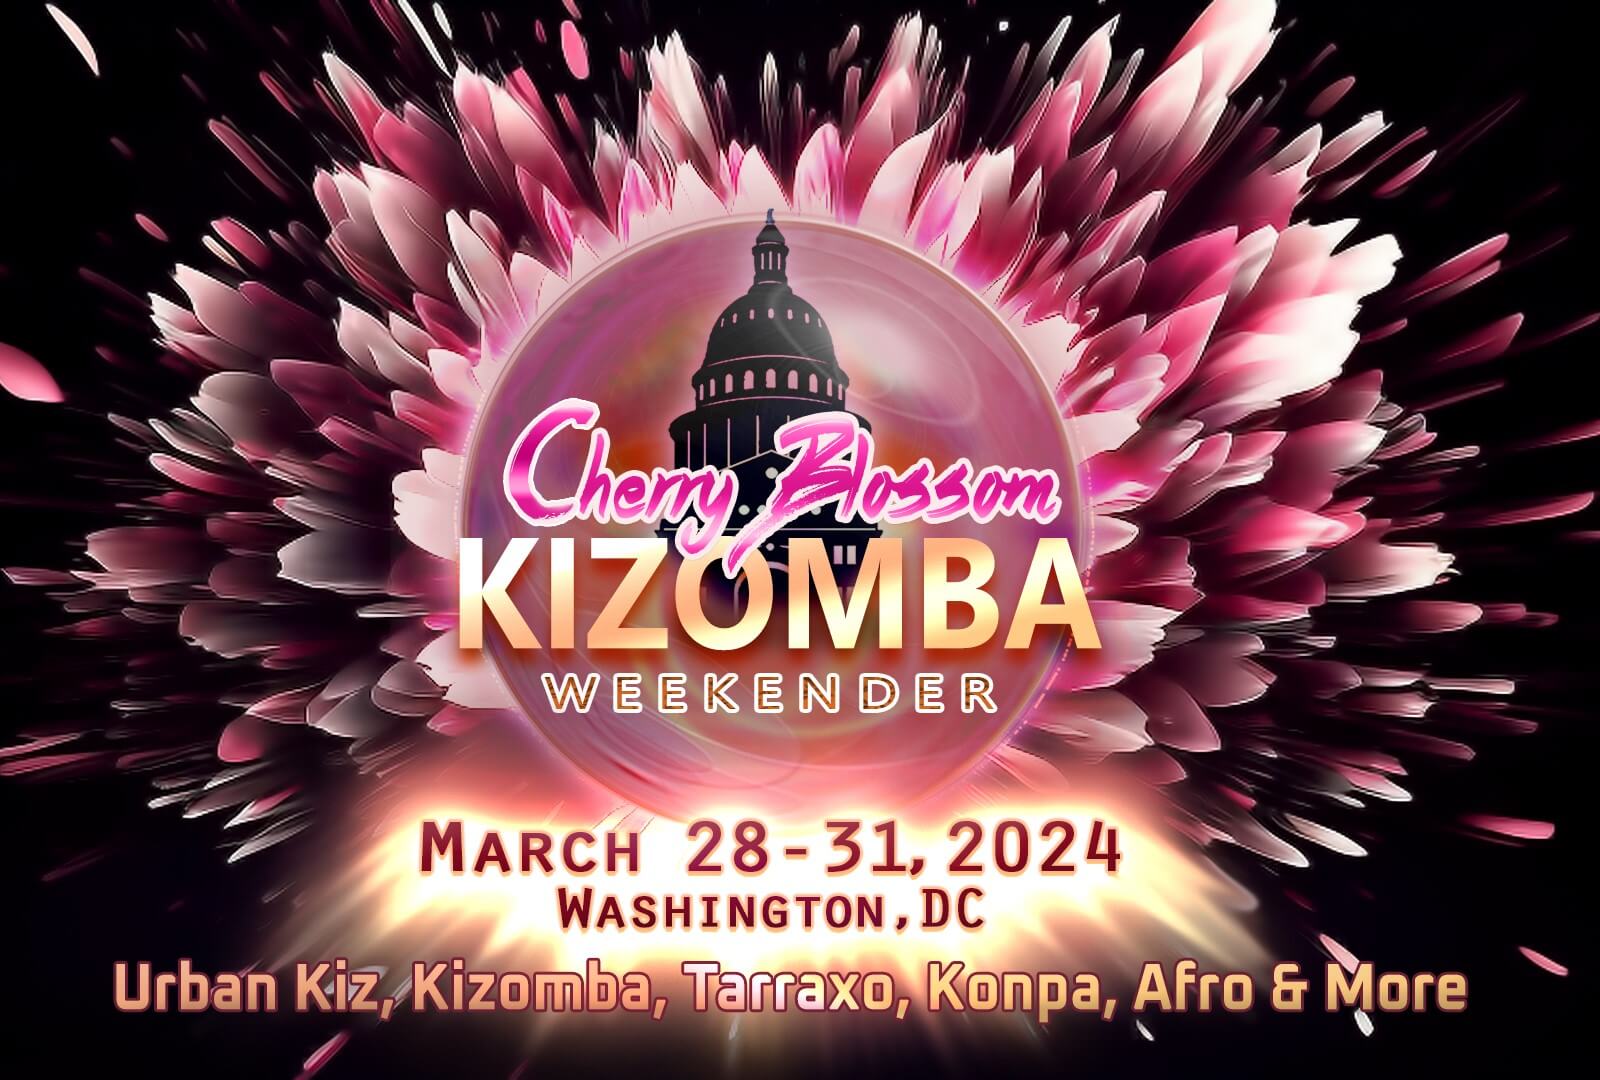 We’re Ready For The Best Cherry Blossom Kizomba Festival!